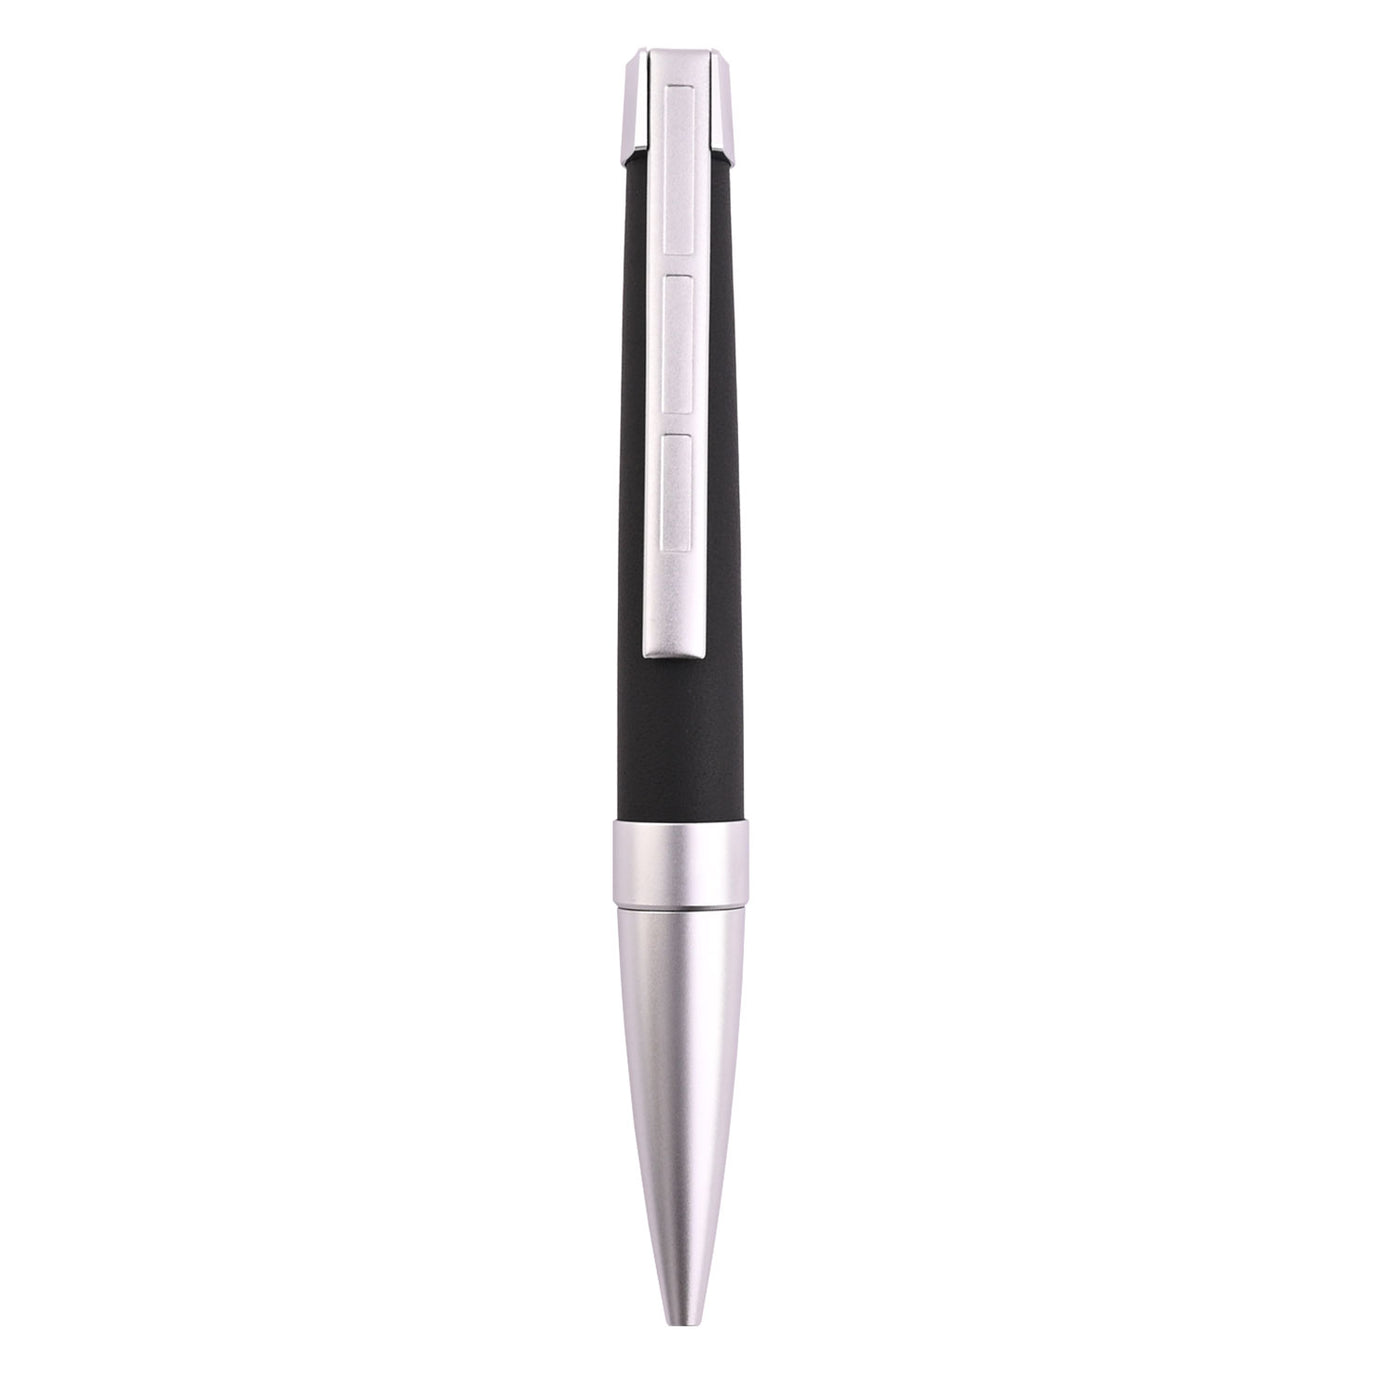 Staedtler Premium Corium Simplex Ball Pen - Anthracite Leather CT